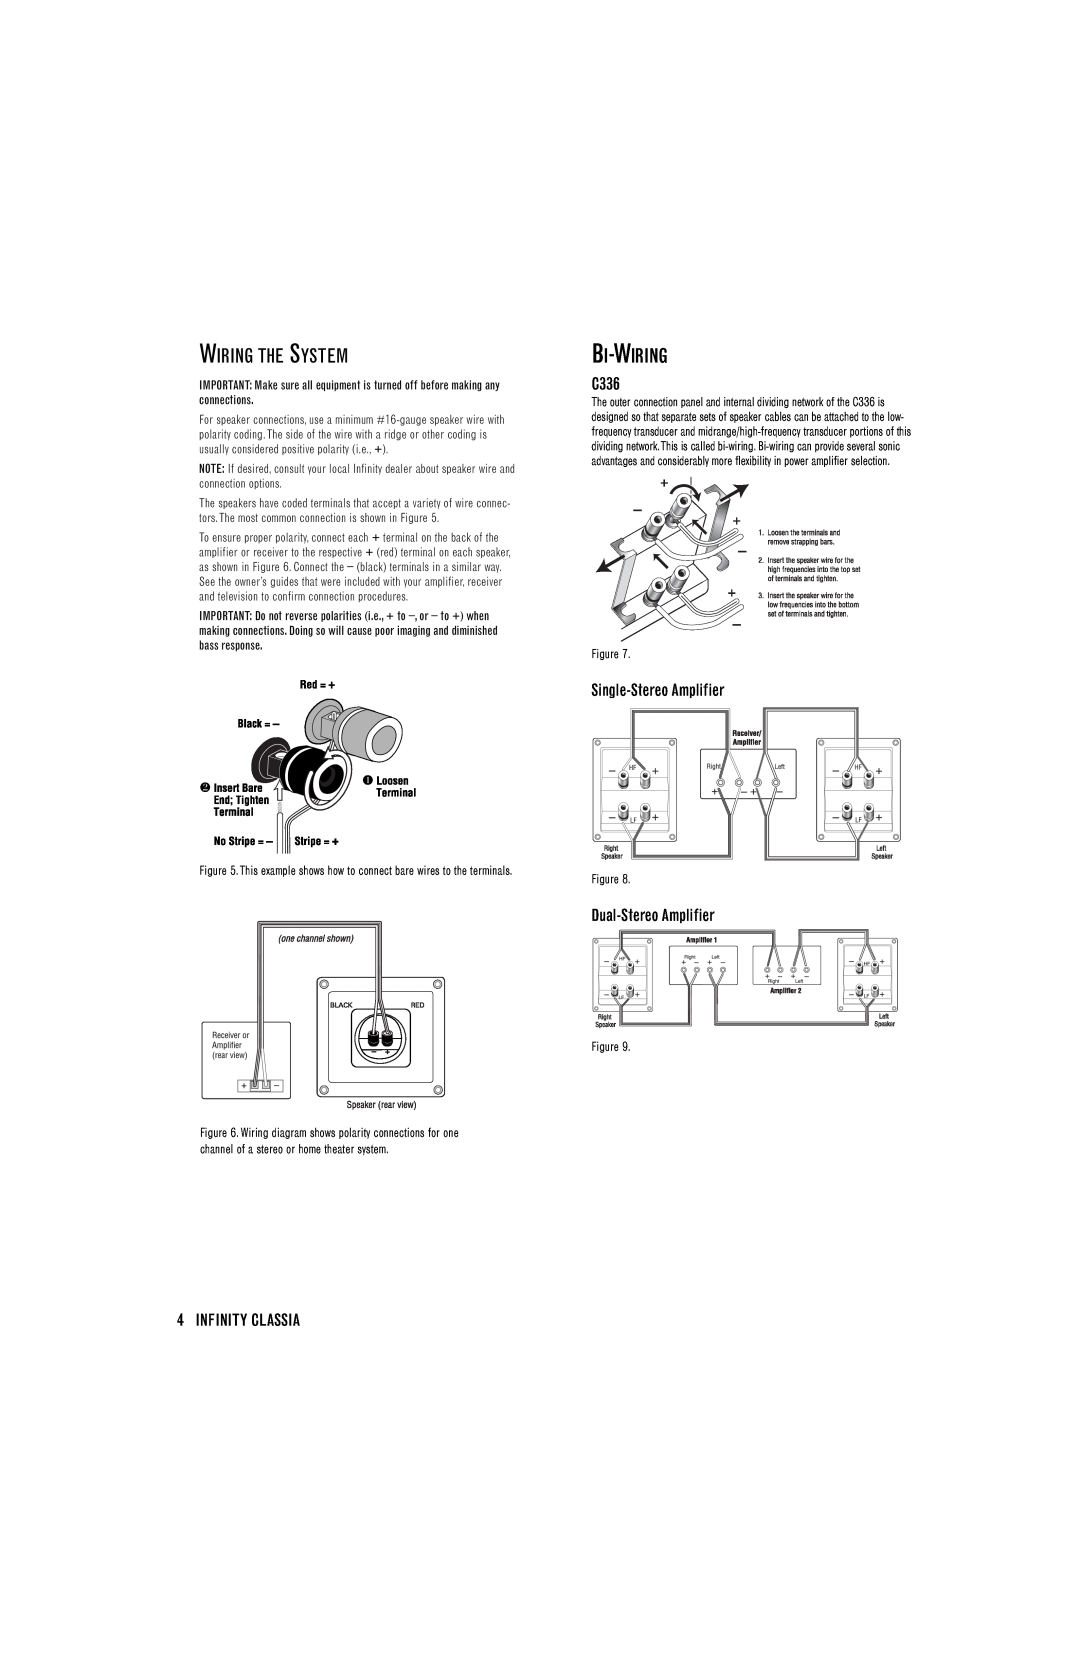 Infinity C205 manual Wiring The System, Bi-Wiring, Single-StereoAmplifier, Dual-StereoAmplifier, Infinity Classia, C336 